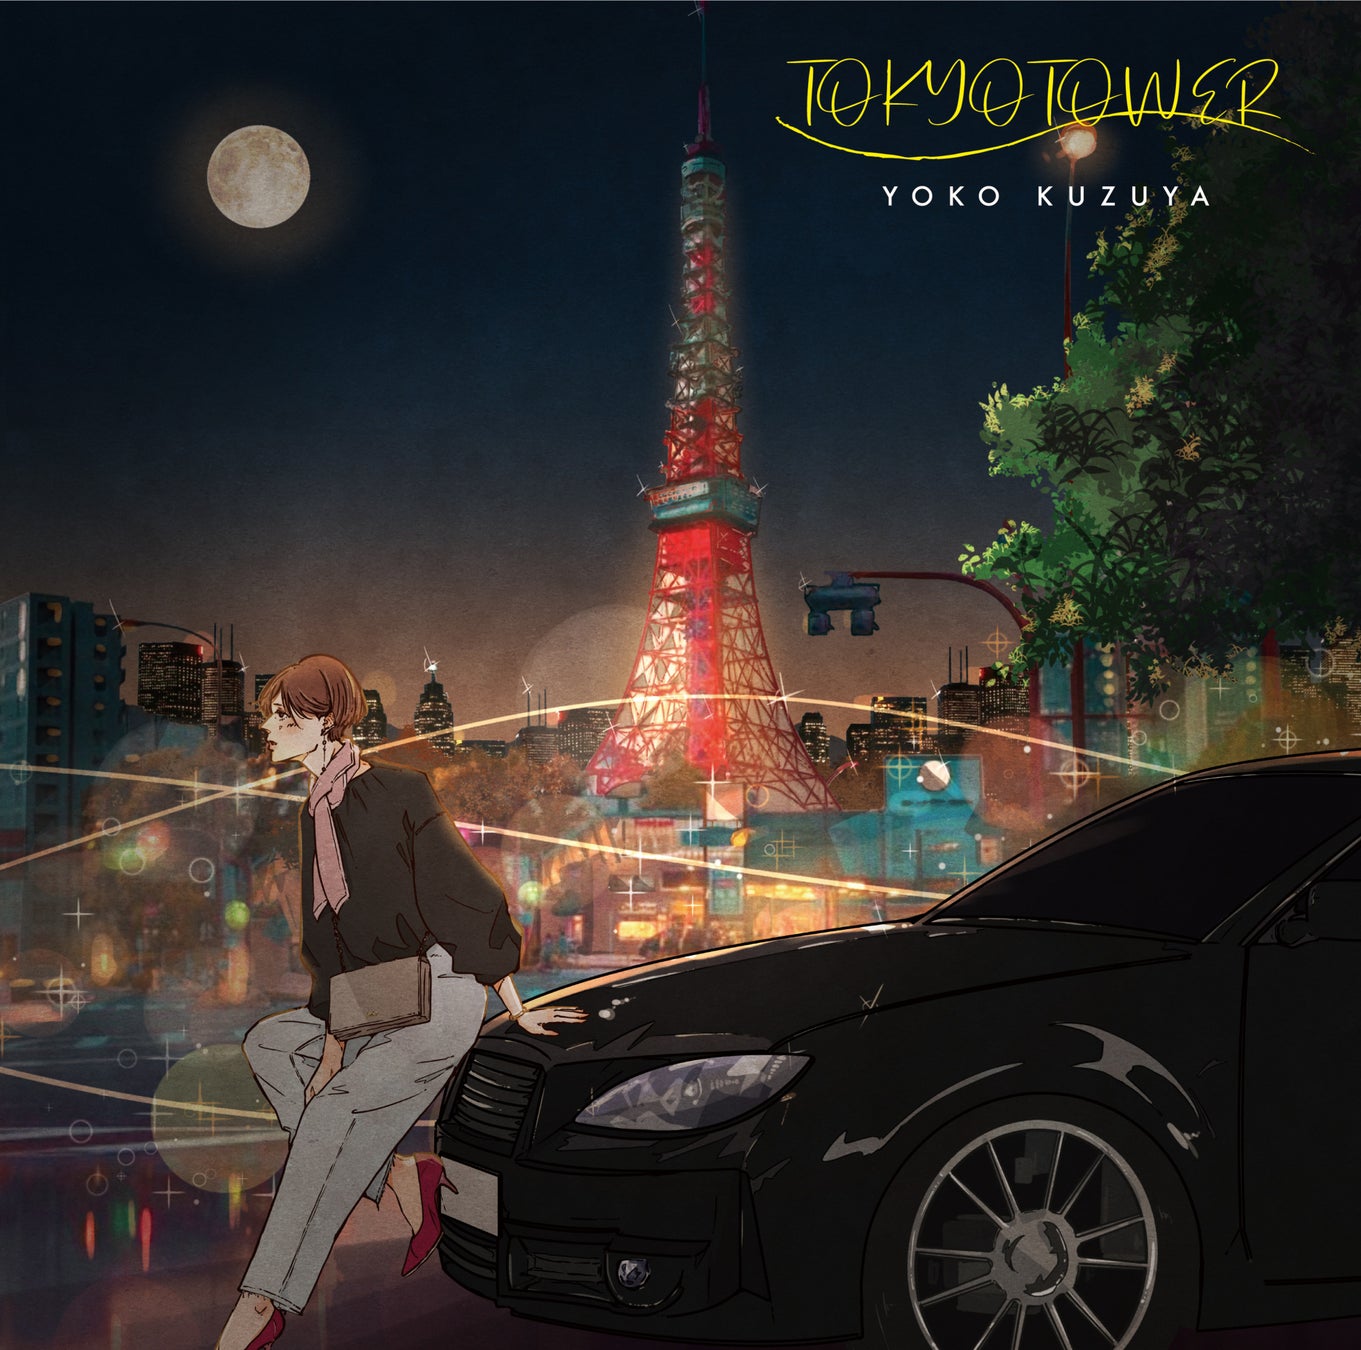 葛谷葉子の21年ぶりのオリジナル・アルバム「TOKYO TOWER」のアナログ盤がカラーヴァイナルで発売が決定！本日よりアルバム全曲の配信もスタート！